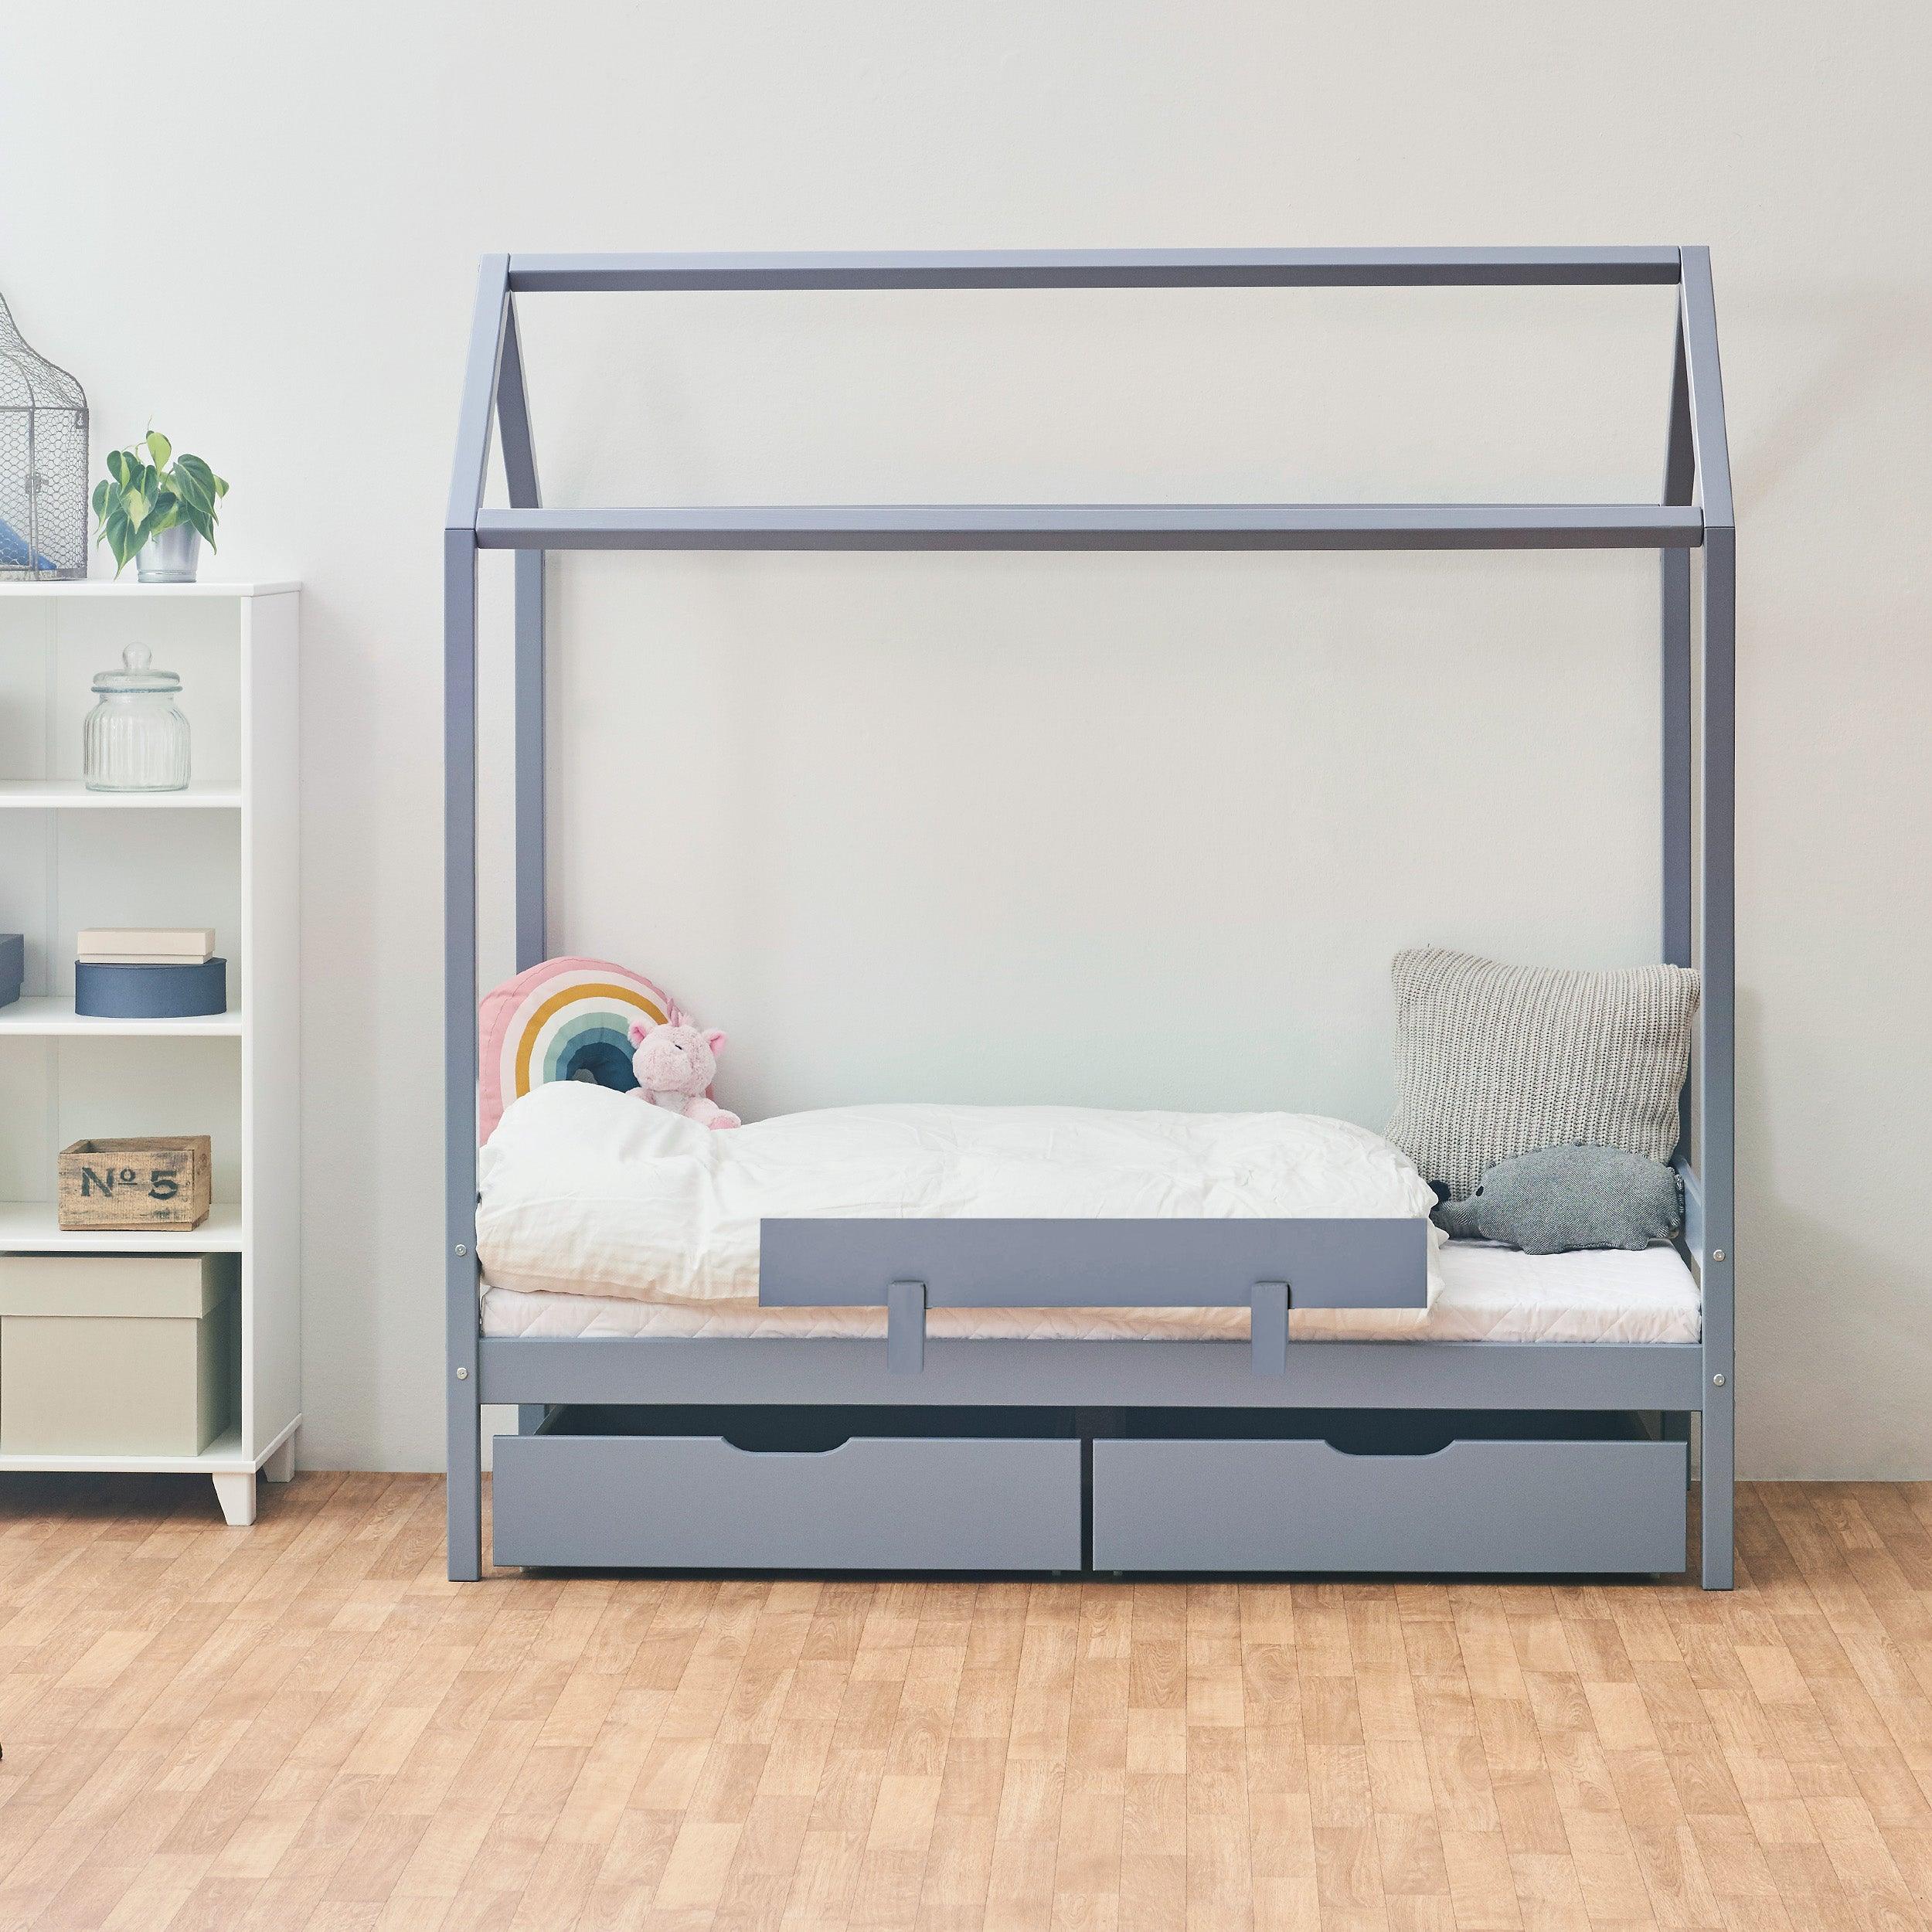 Outlet: ECO Comfort cama casita 70x160 cm con cajones & brandilla, azul-gris